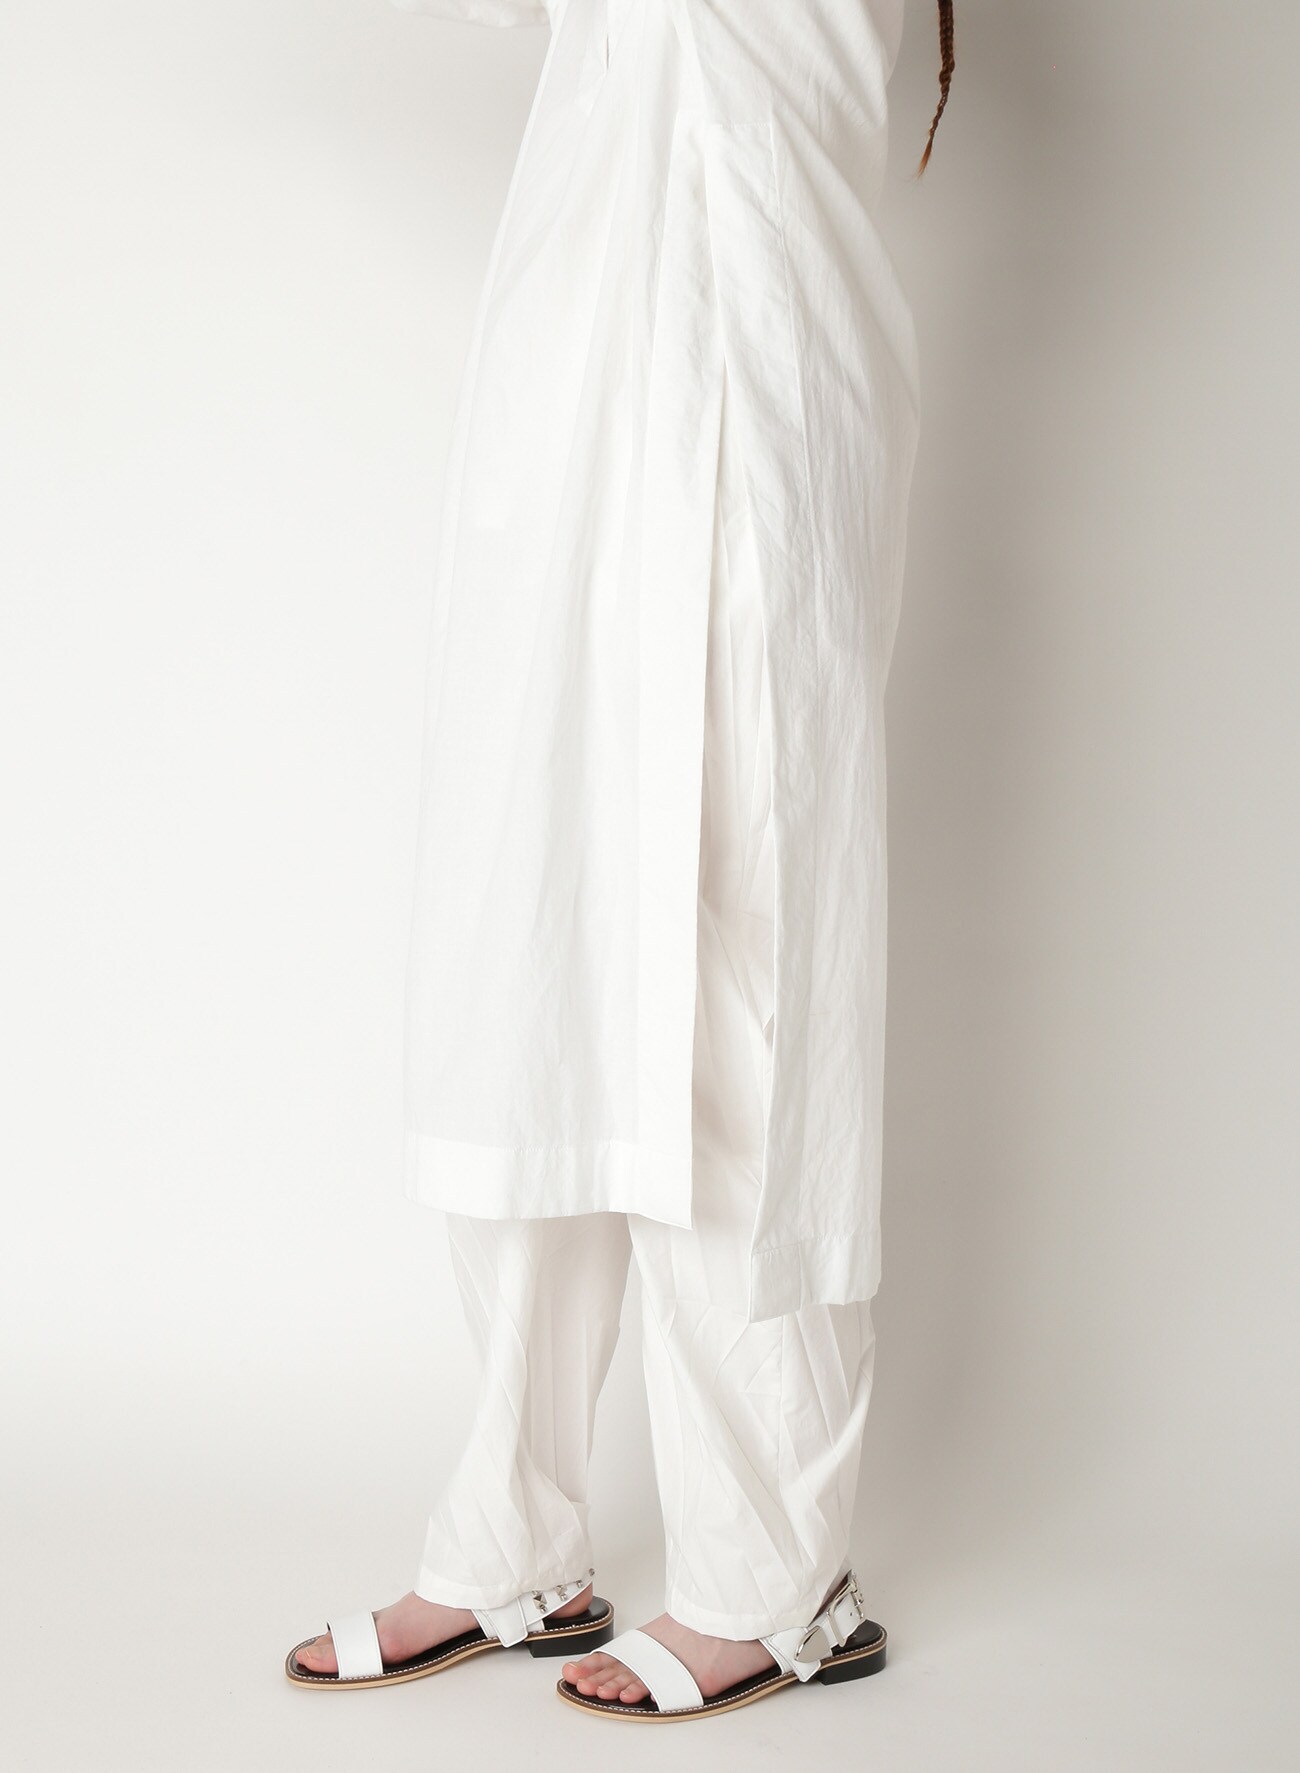 Khadi Long Sleeve Dress